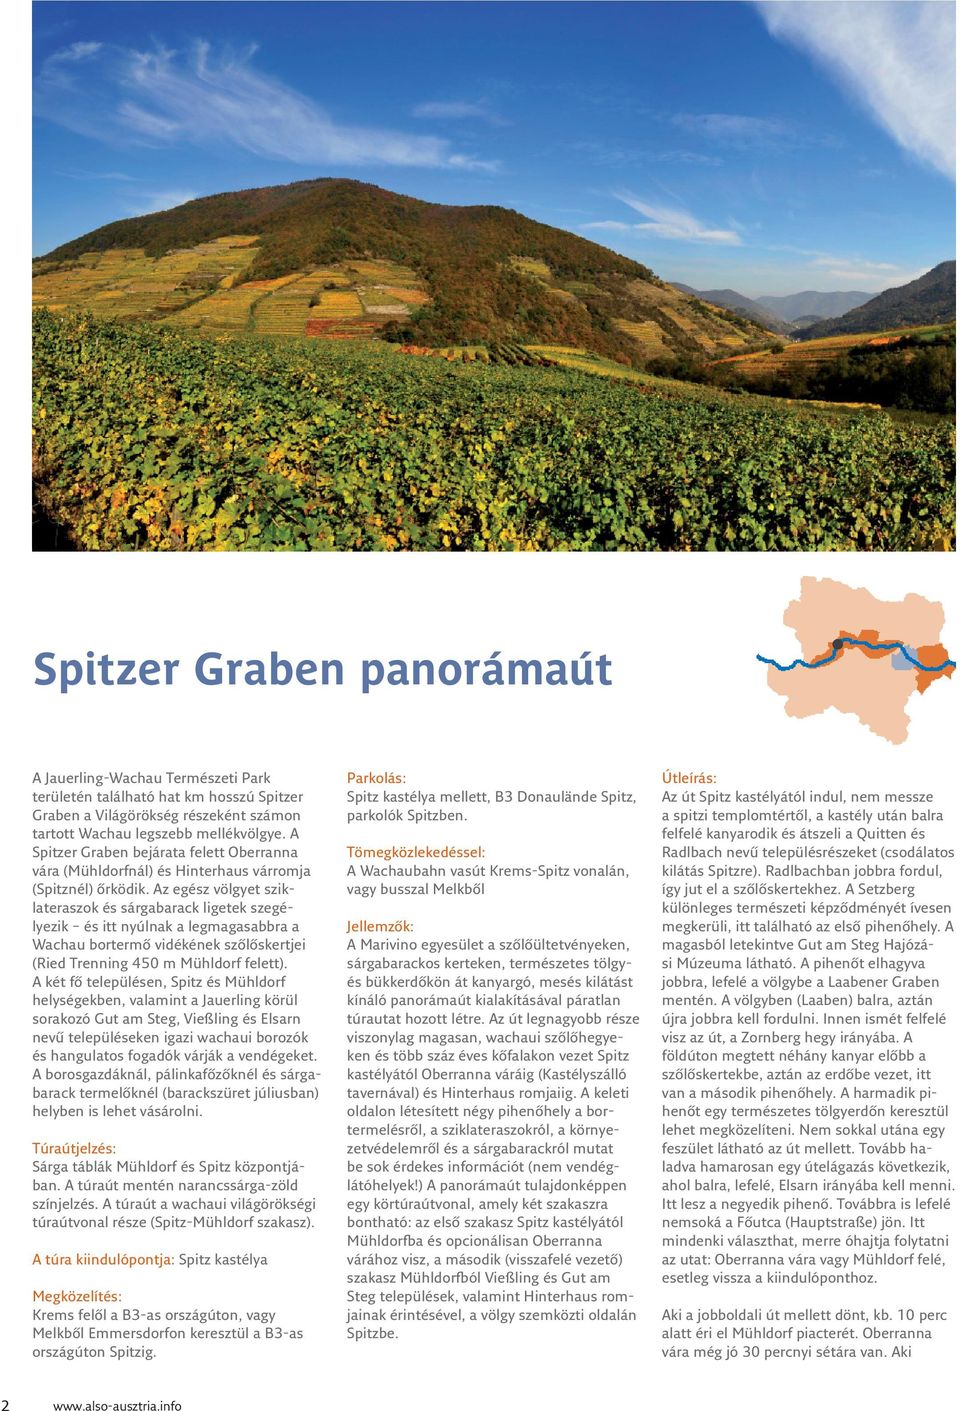 Az egész völgyet sziklateraszok és sárgabarack ligetek szegélyezik és itt nyúlnak a legmagasabbra a Wachau bortermő vidékének szőlőskertjei (Ried Trenning 450 m Mühldorf felett).